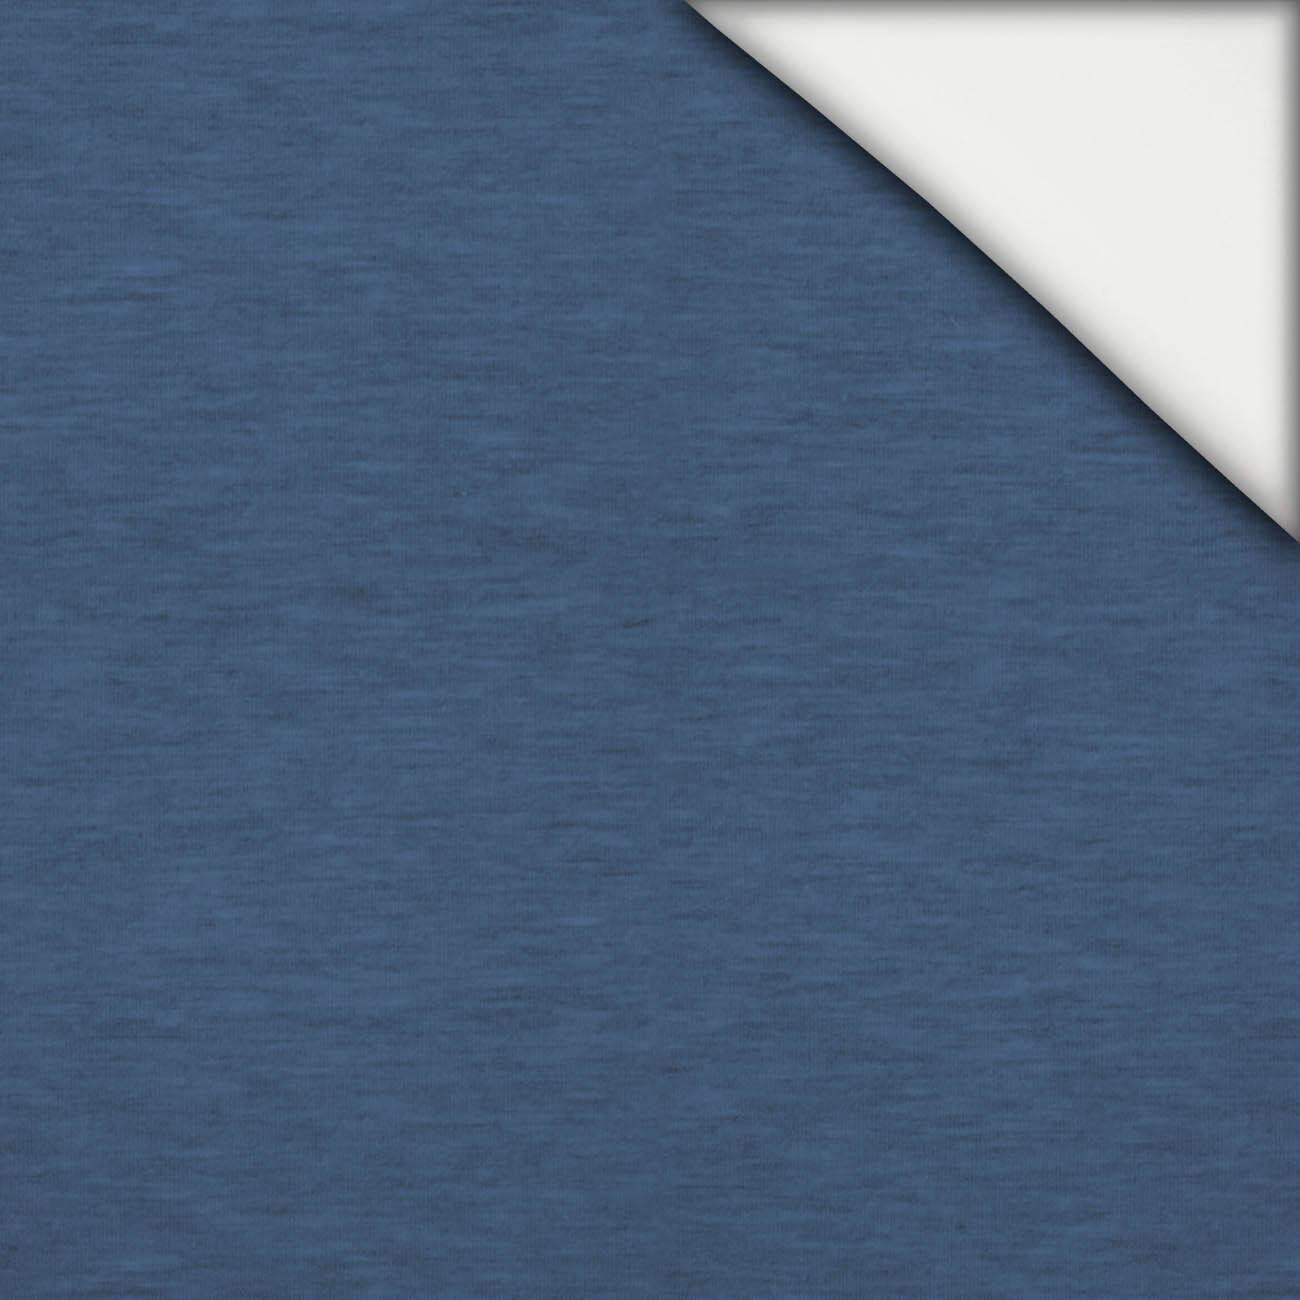 MELANGE POWDER BLUE - light brushed knitwear